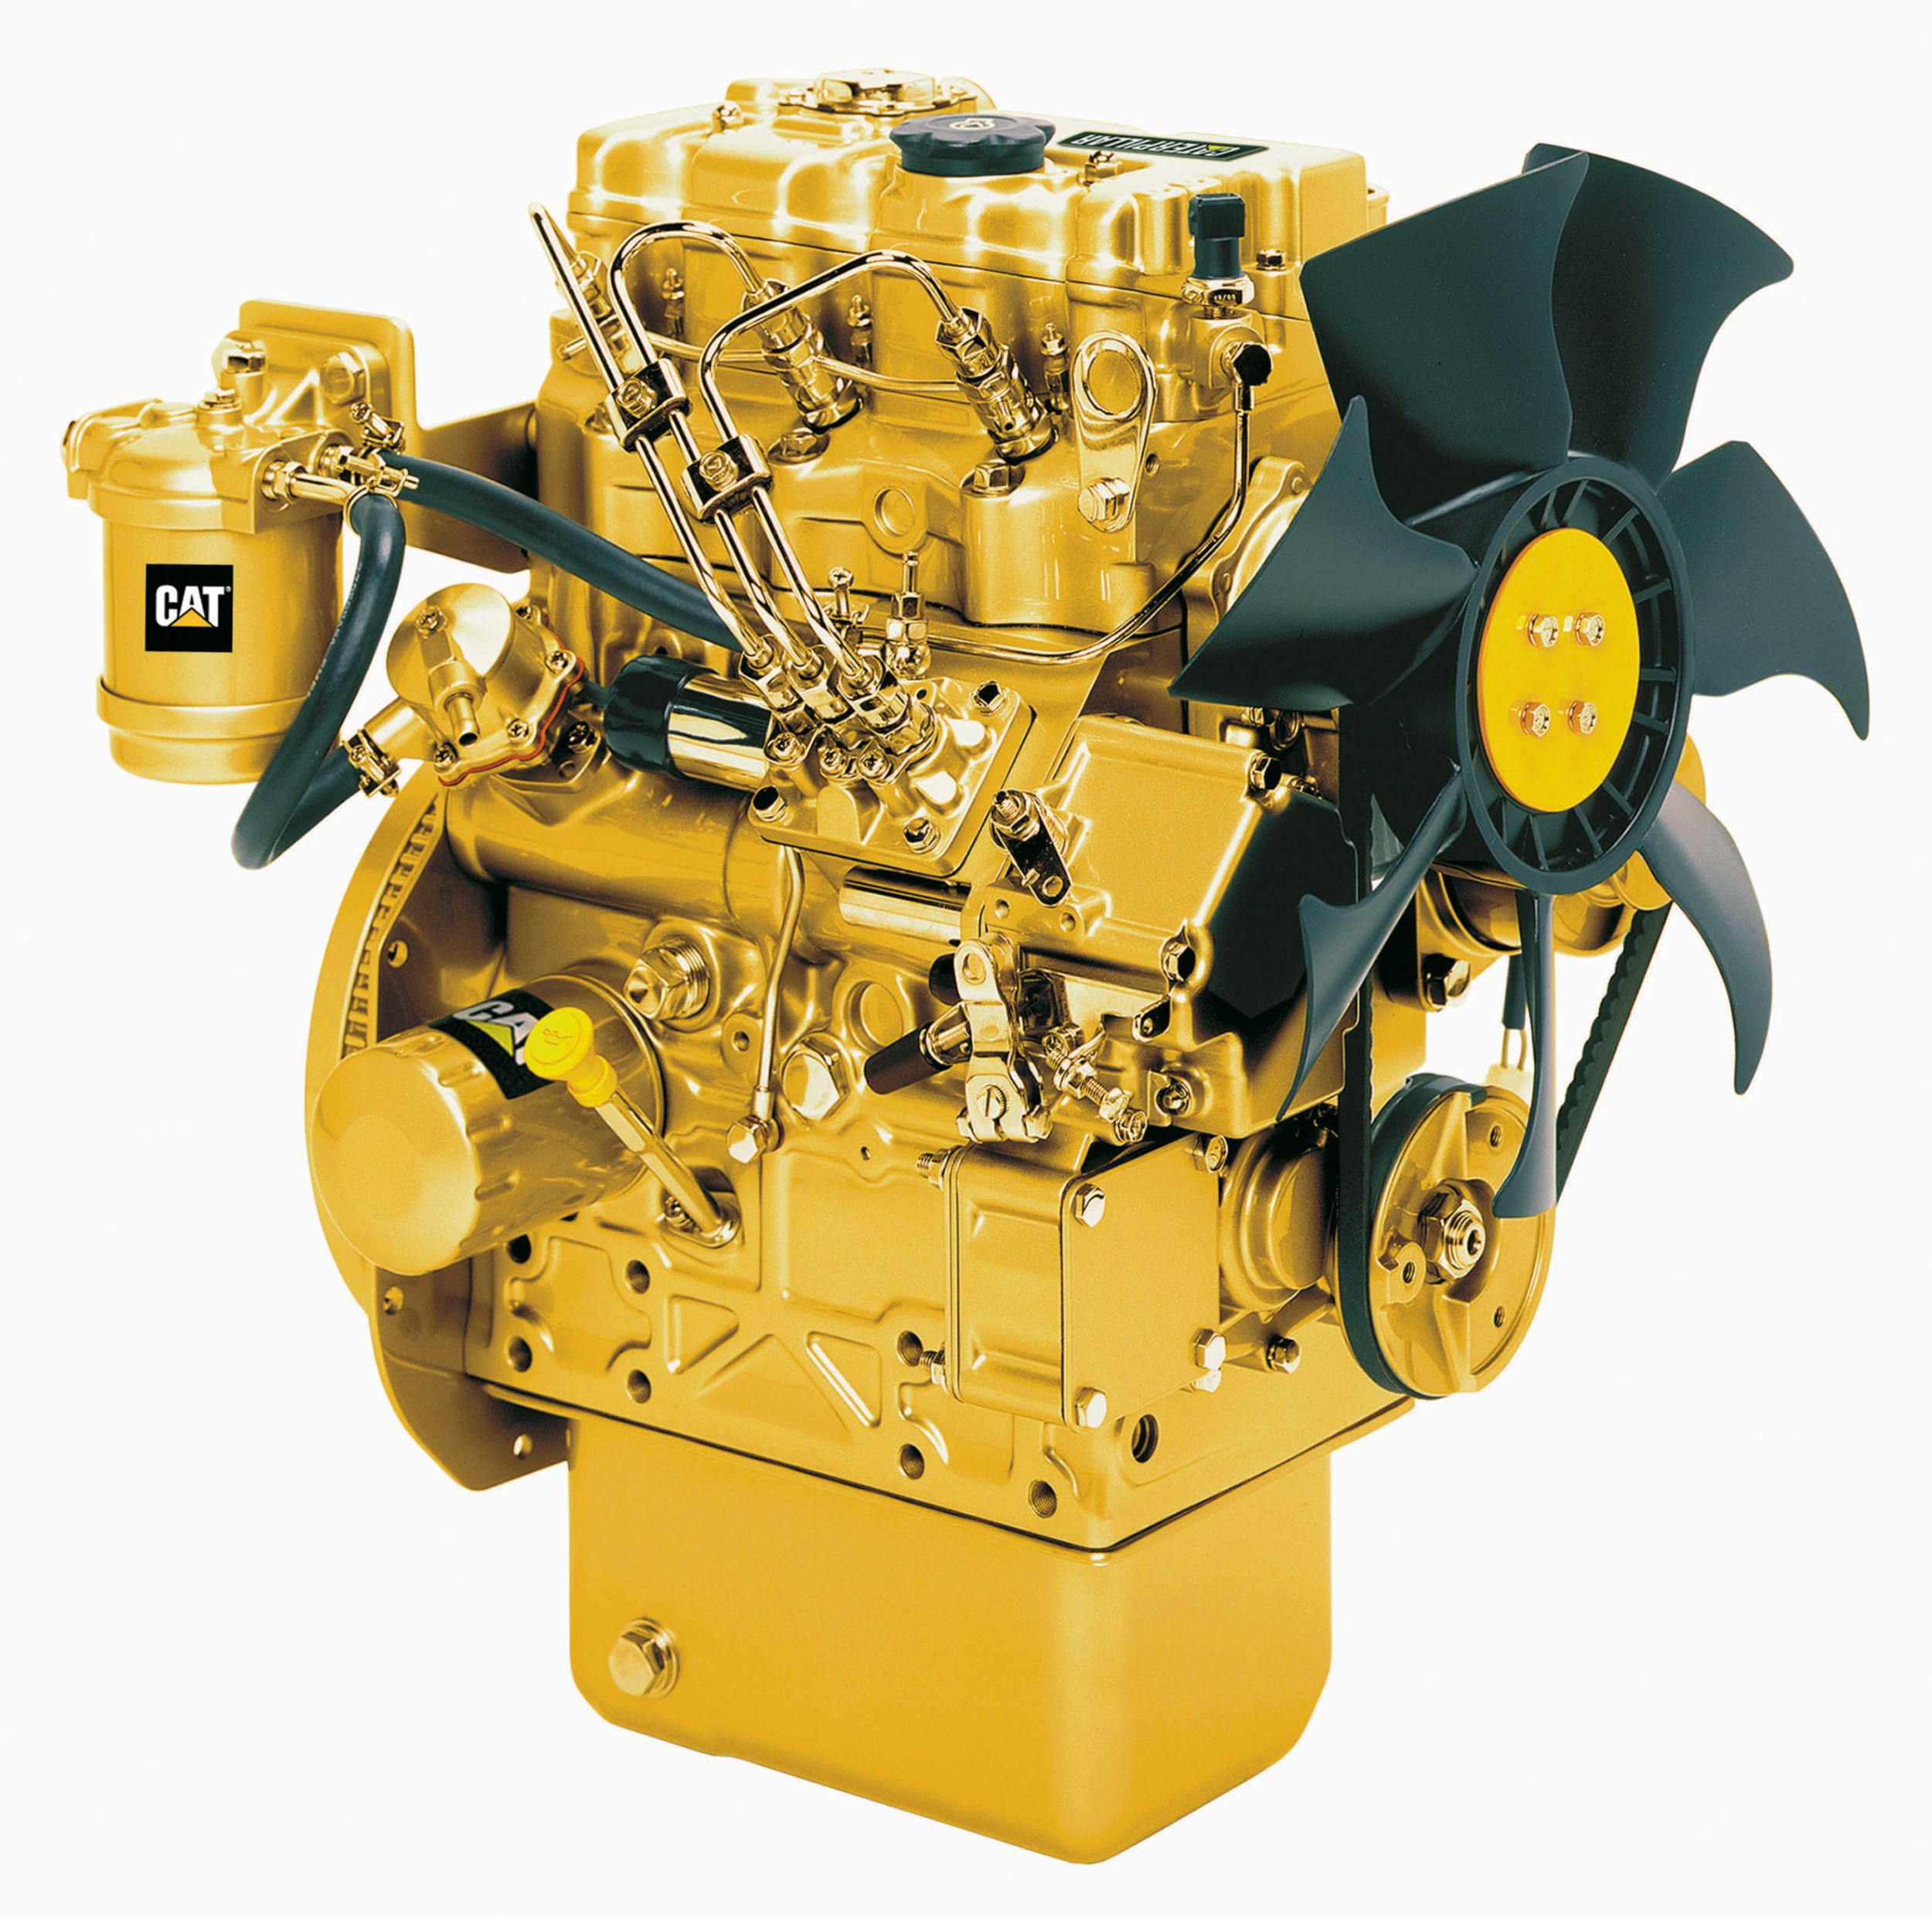 Motores Diésel C1.1 LRC: no regulado o con menos regulaciones